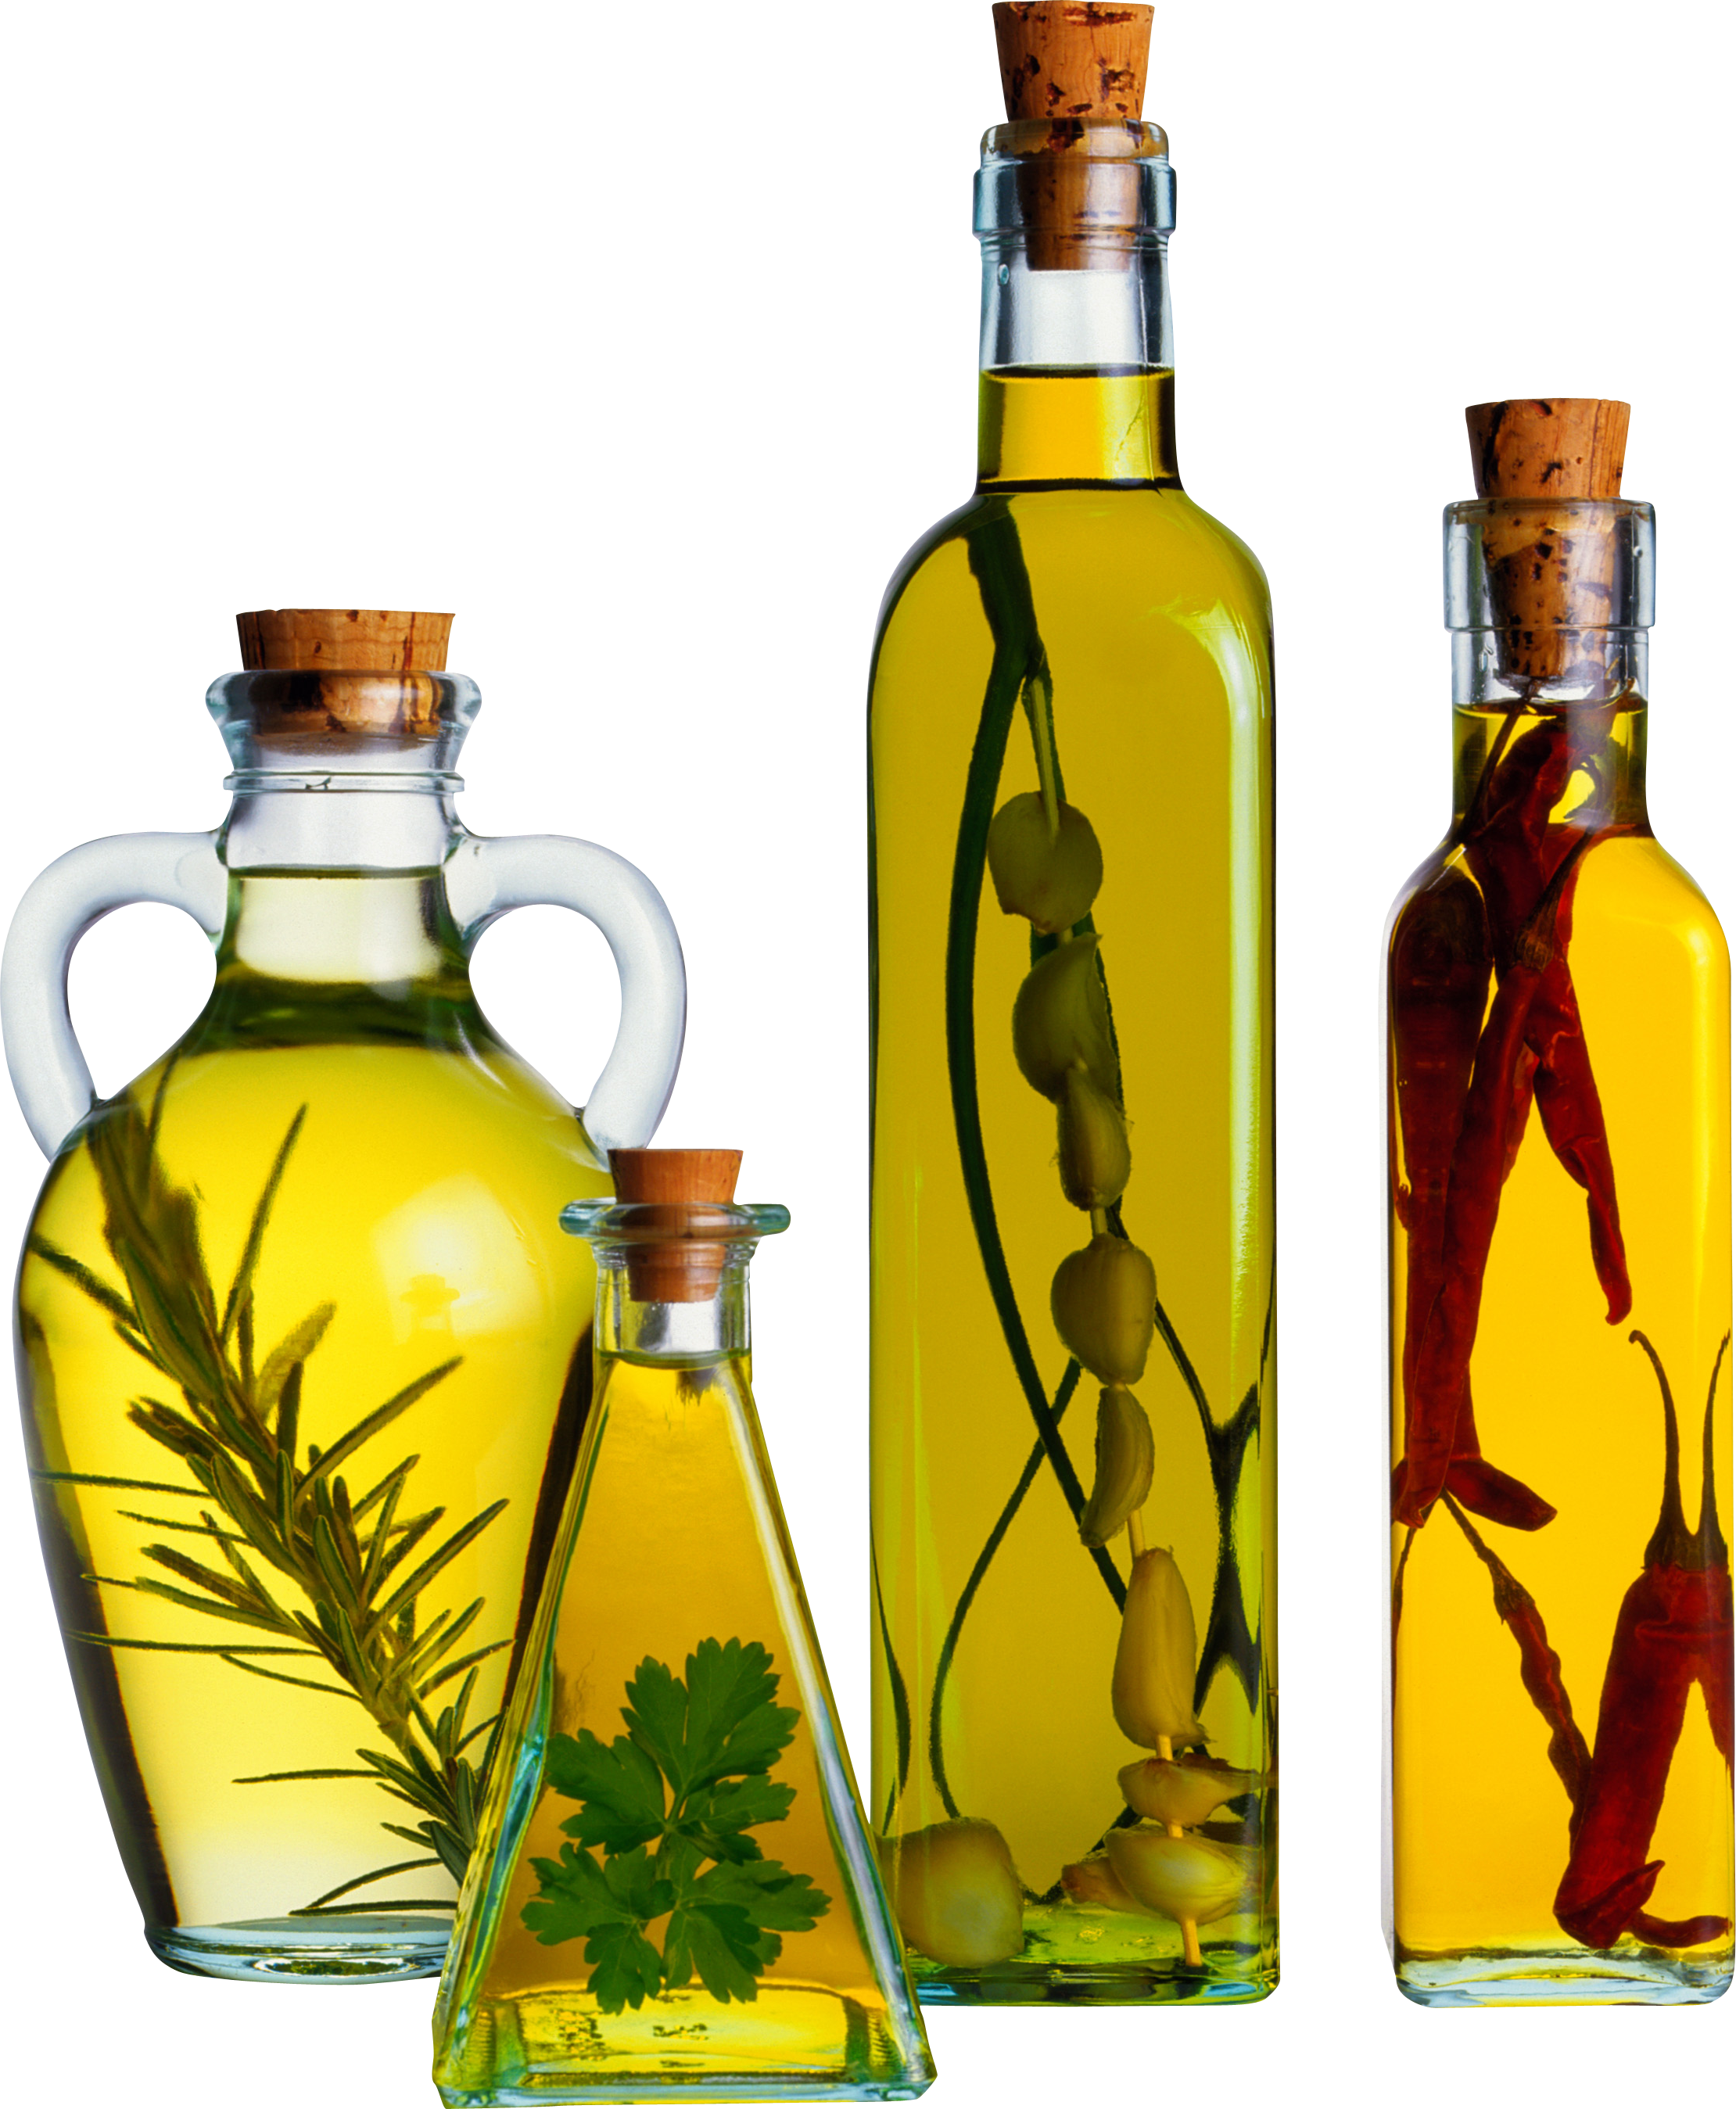 Olio d'oliva